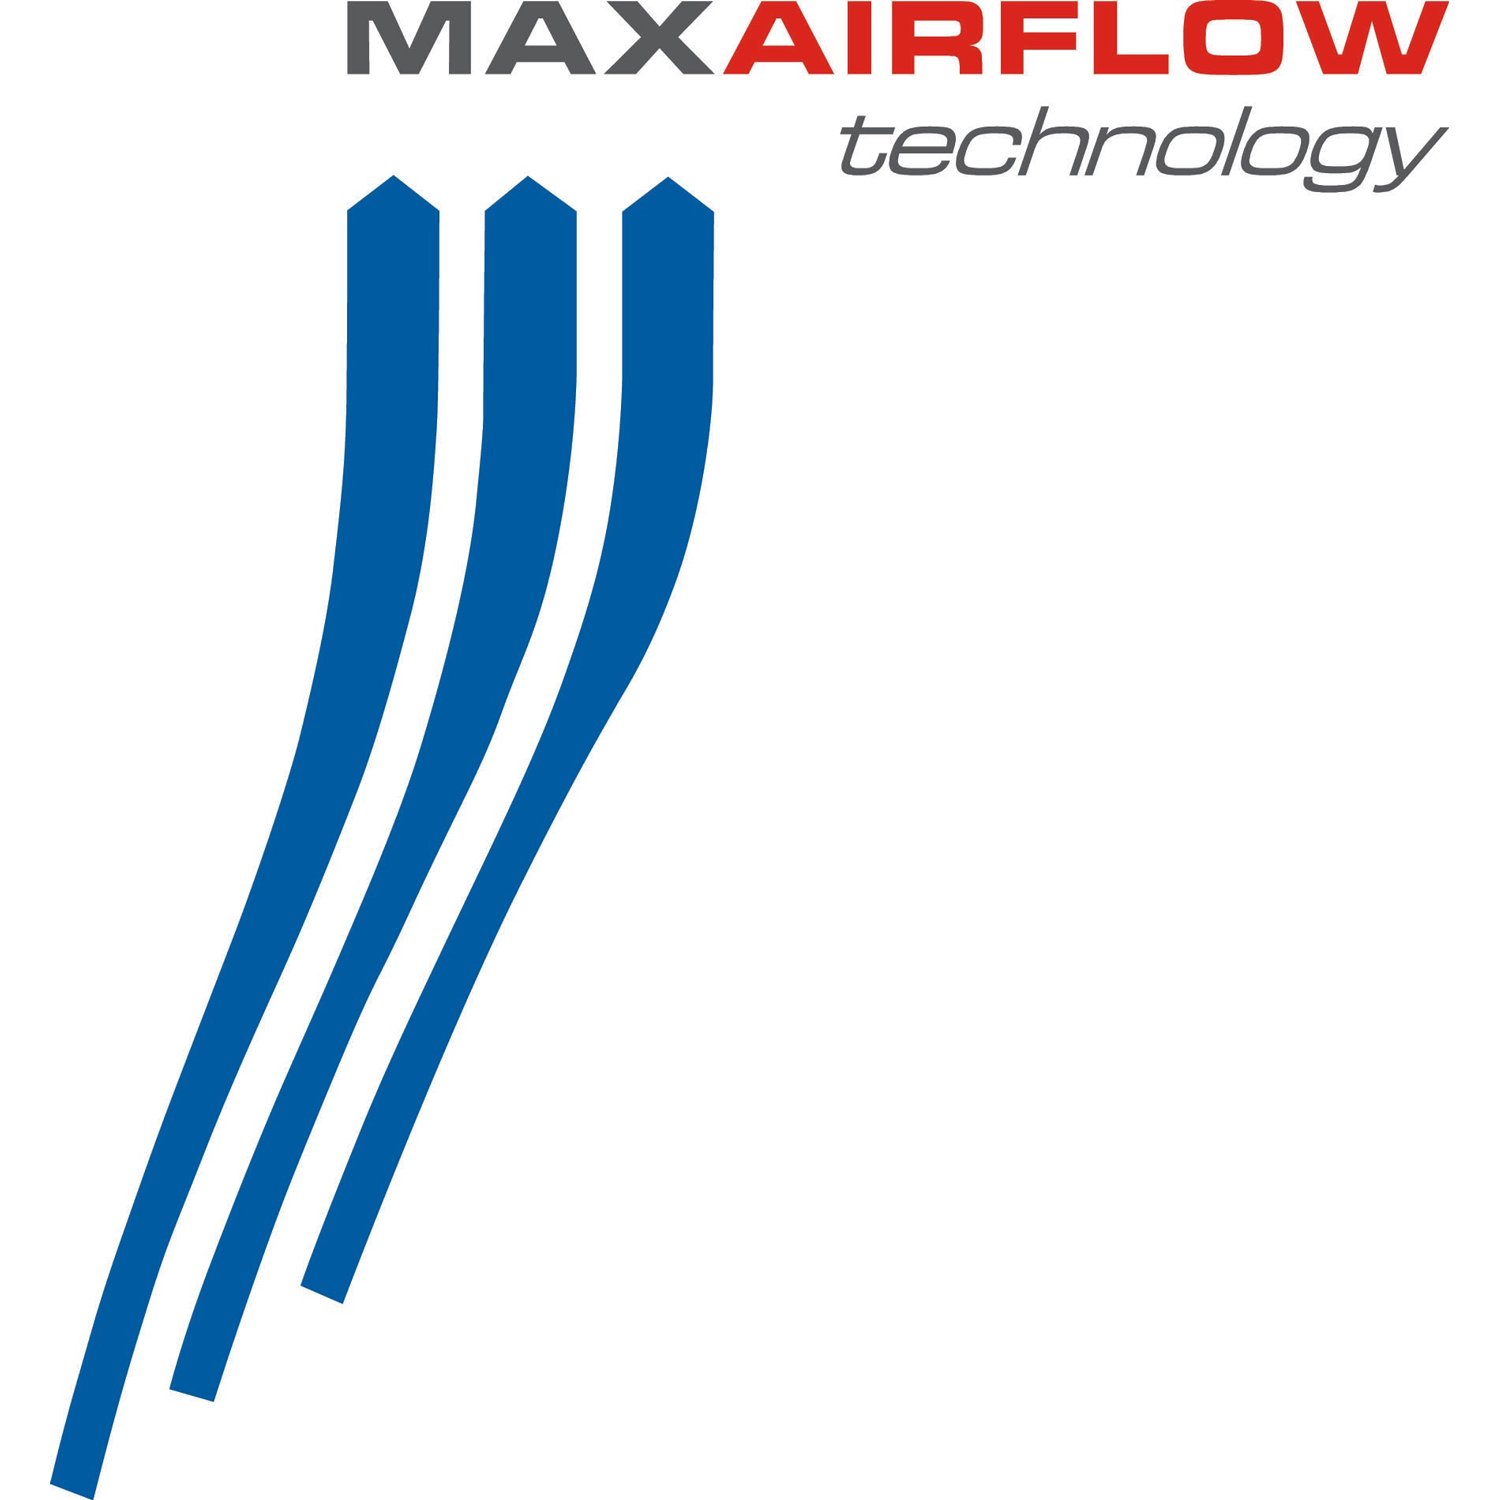 MaxAirflow Technology